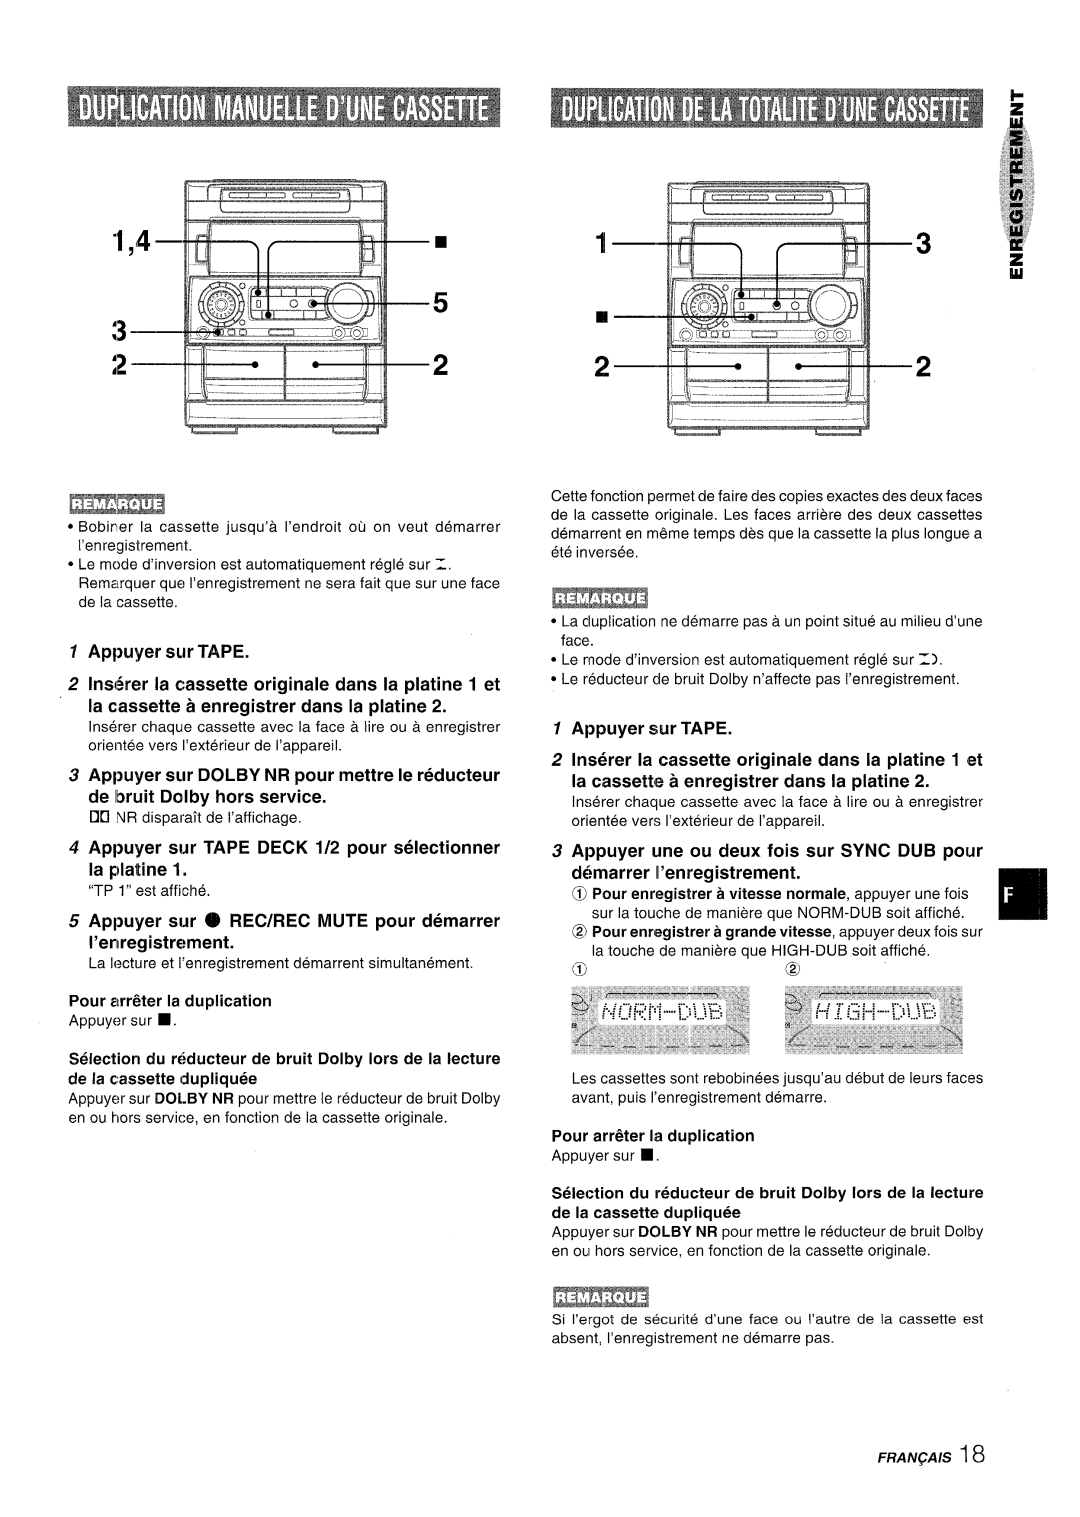 Aiwa NSX-A909 manual Appuyer sur TAPE DECK 1/2 pour selectionner la platine, de la cassette dupliquee, Fraiv~A/S 